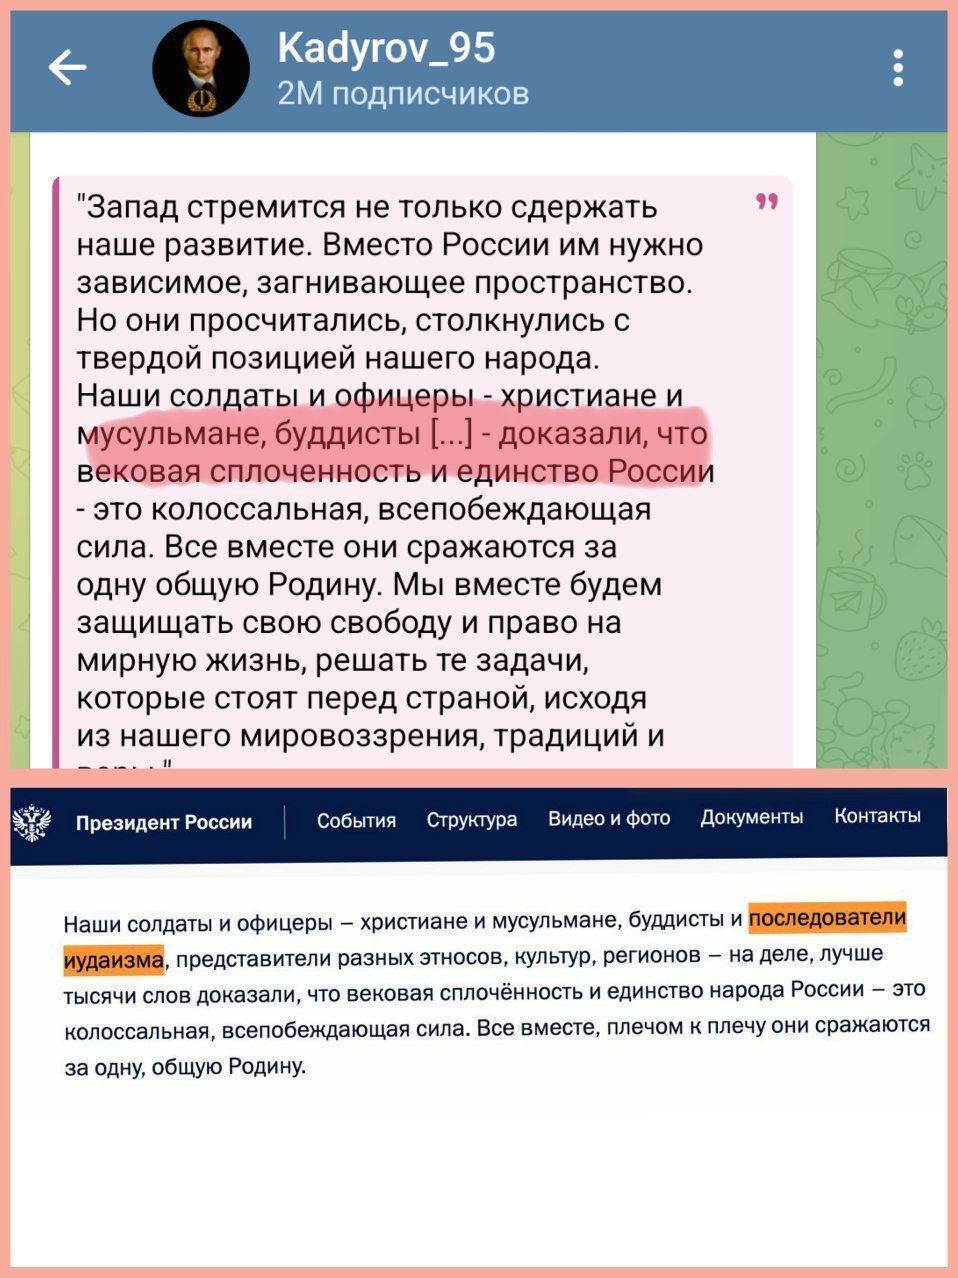 Кадиров "відцензурував" звернення Путіна до Федеральних зборів: стало відомо, який уривок "викреслив"